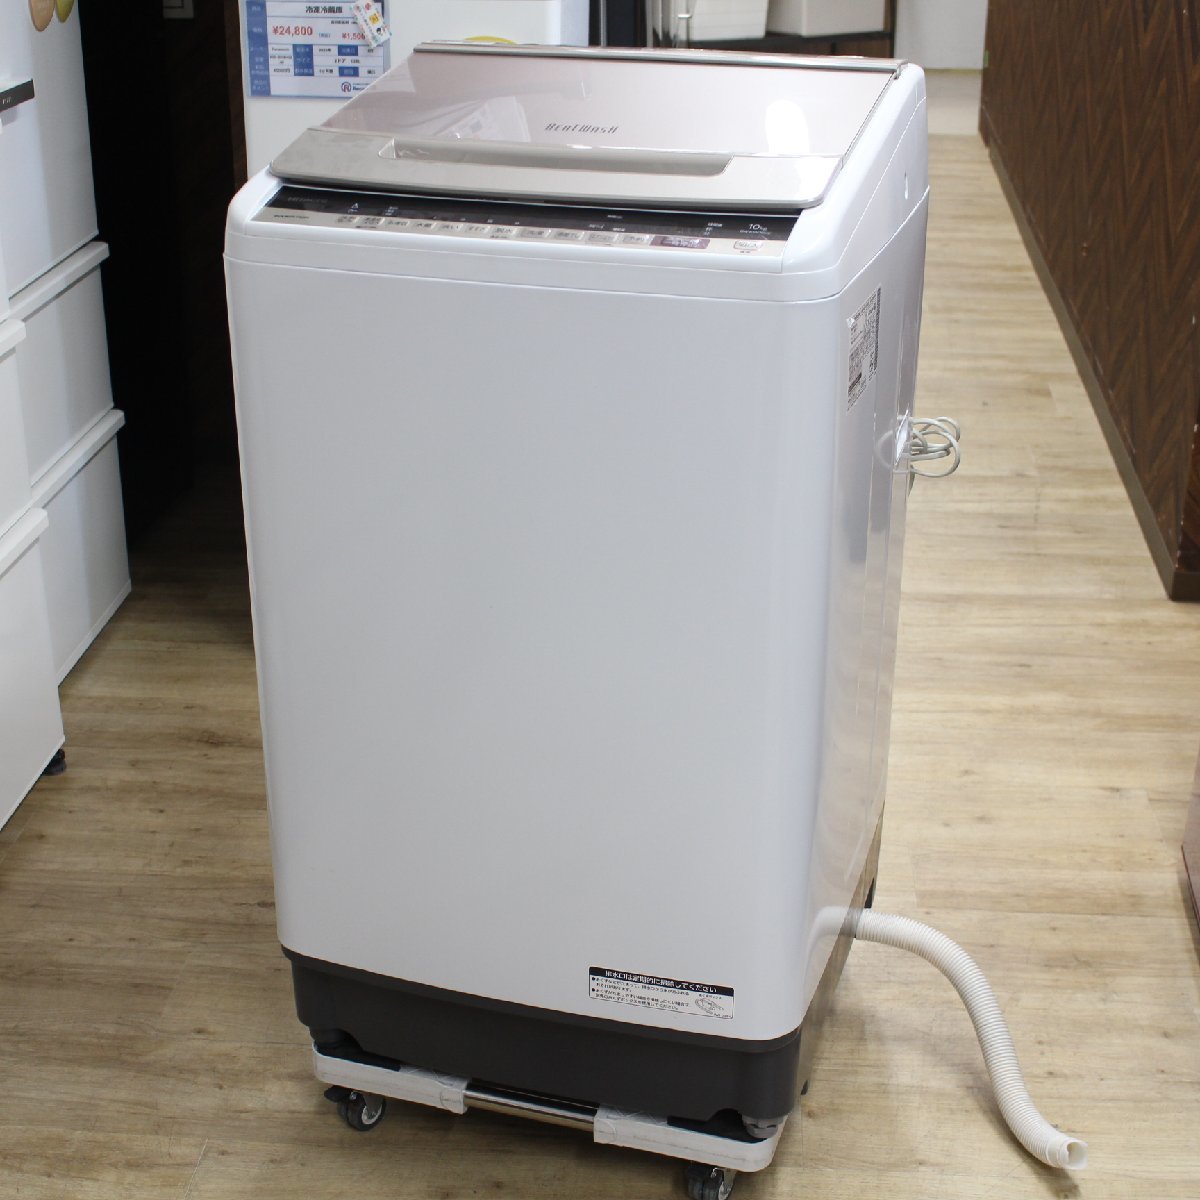 川崎市中原区にて 日立 洗濯機 BW-KSV100E 2020年製 を出張買取させて頂きました。